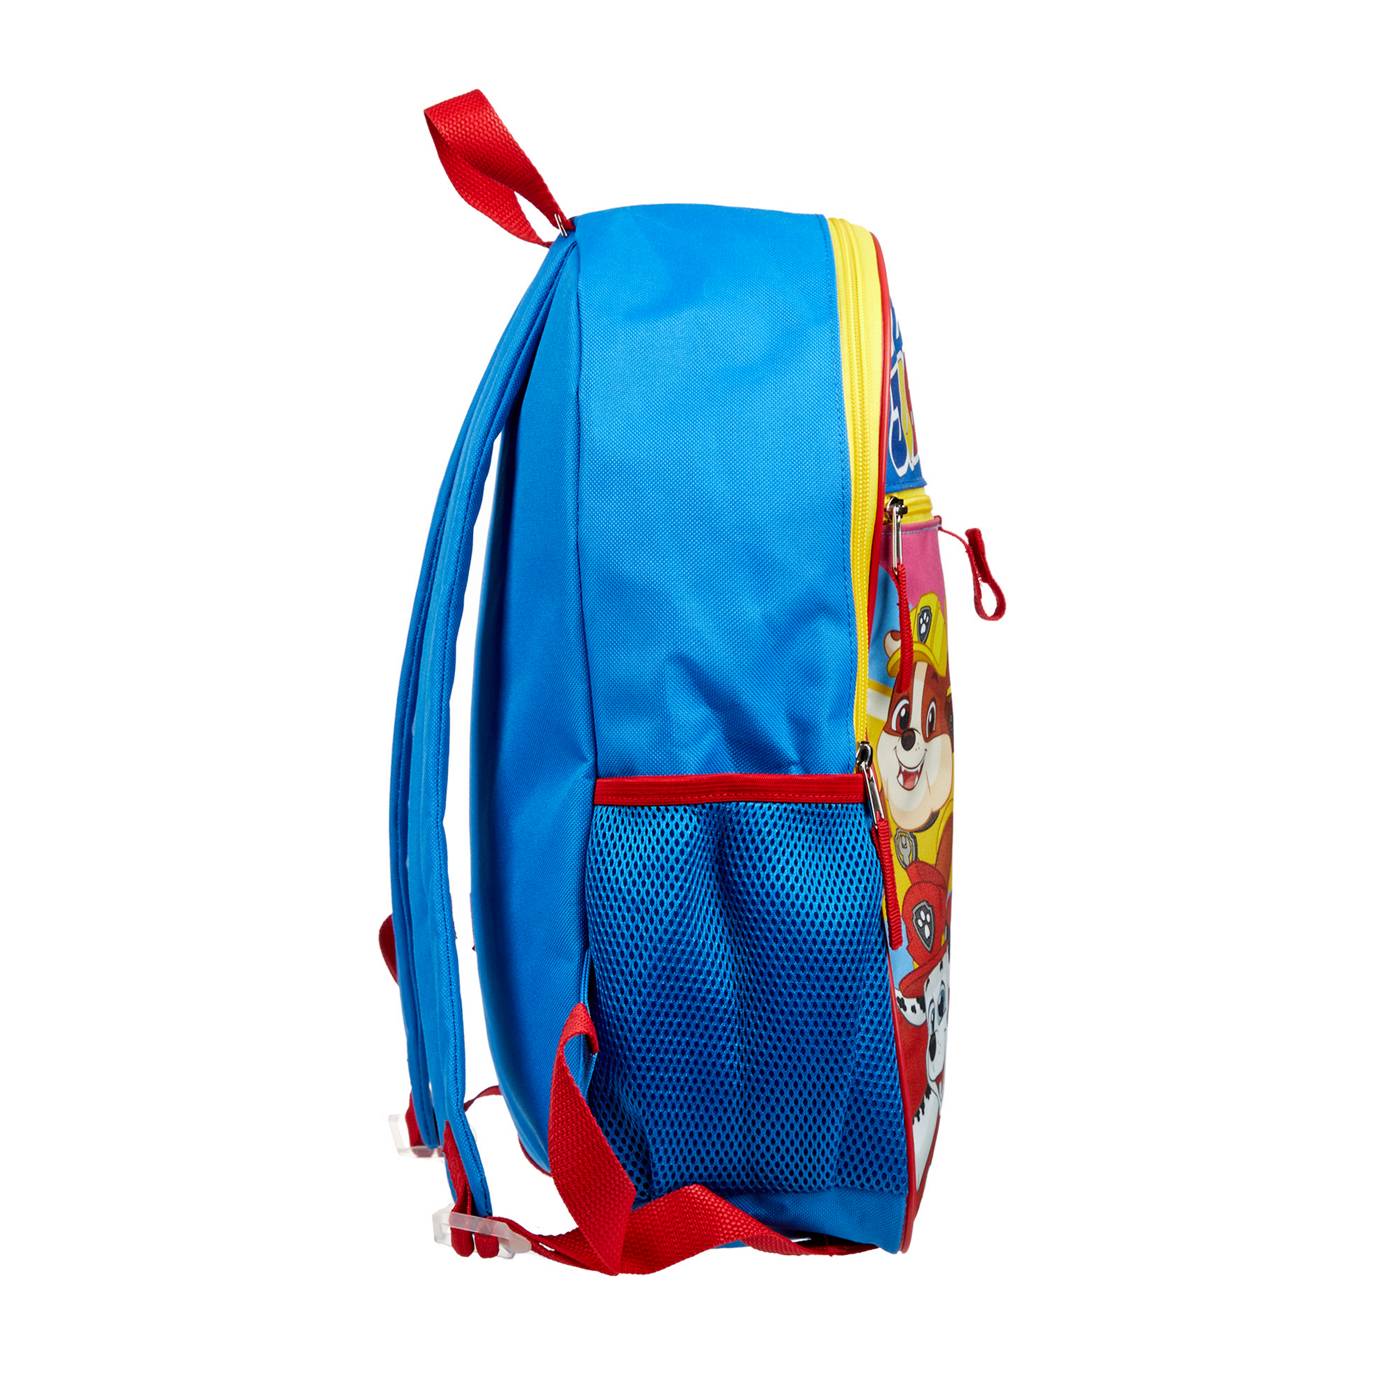 Nickelodeon Paw Patrol Backpack Set; image 4 of 5